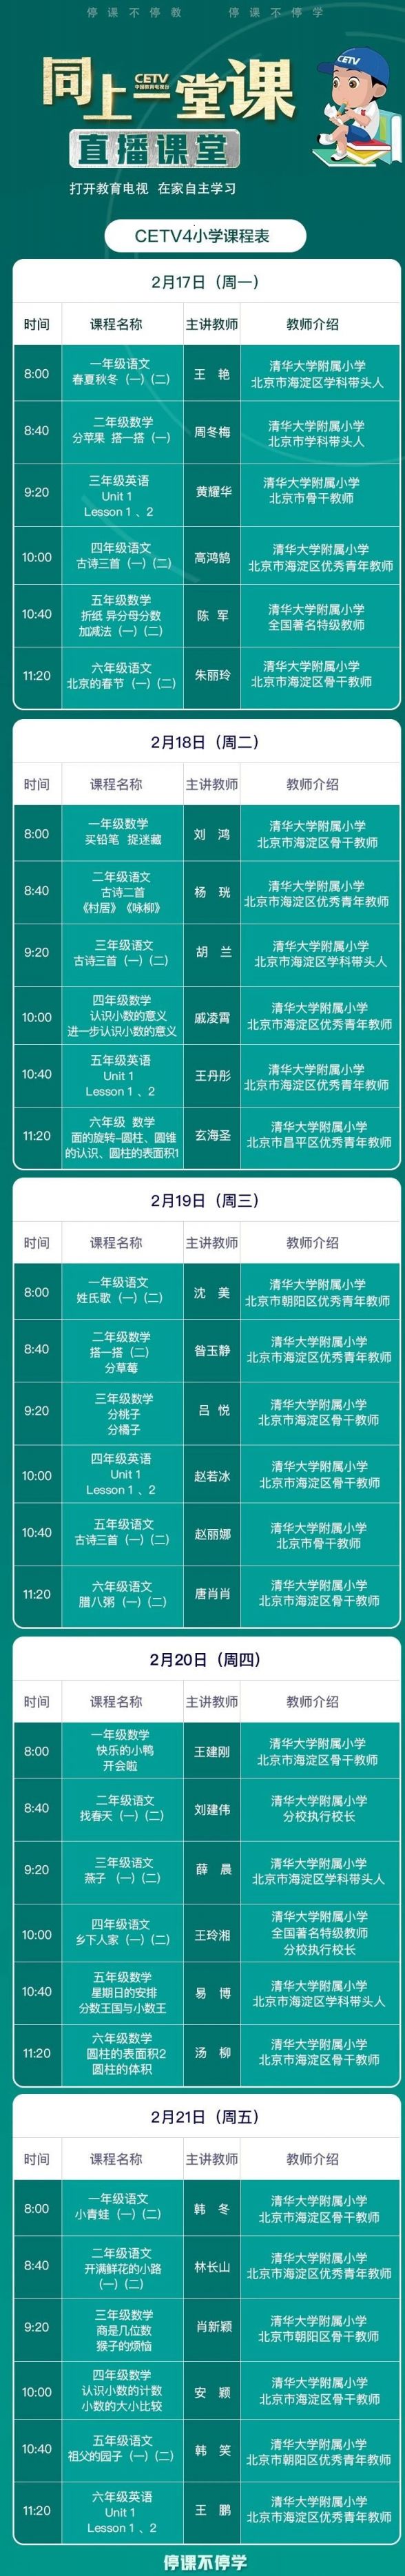 2020中国教育电视台同上一堂课课程表一览